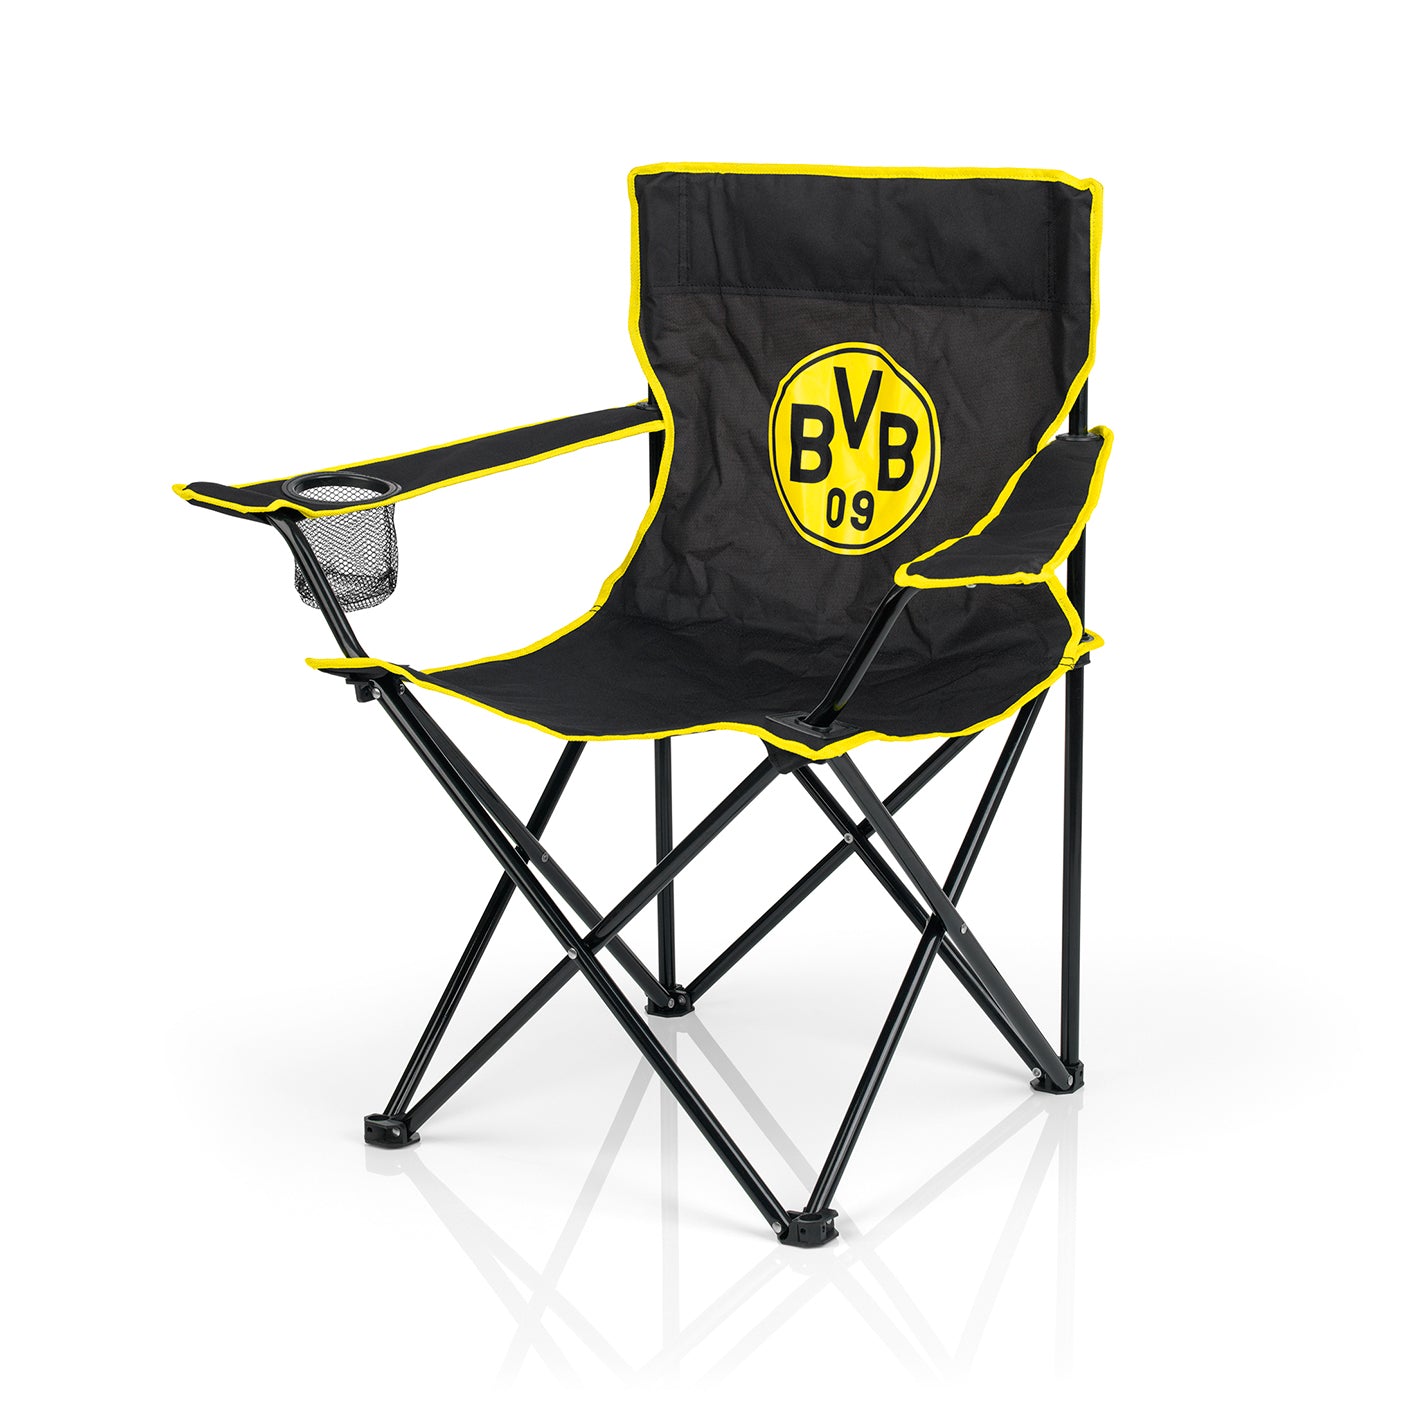 Campingstuhl faltbar - 80x50 cm - schwarz/gelb mit Logo von BVB